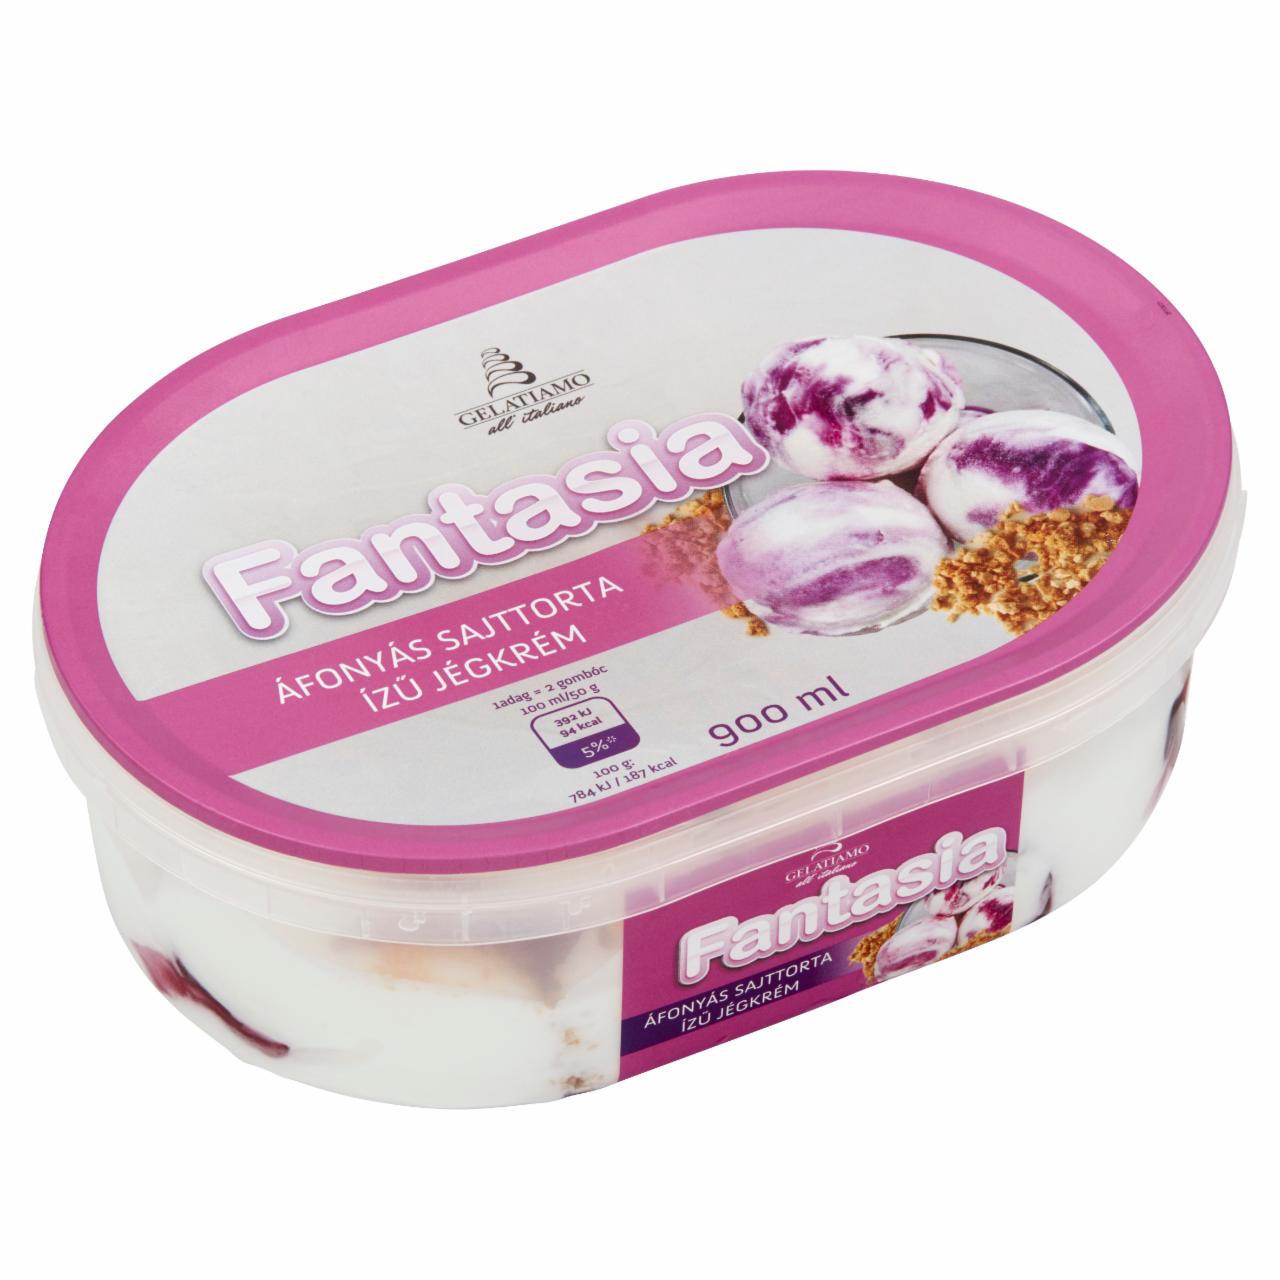 Képek - Gelatiamo Fantasia áfonyás sajttorta ízű jégkrém 900 ml